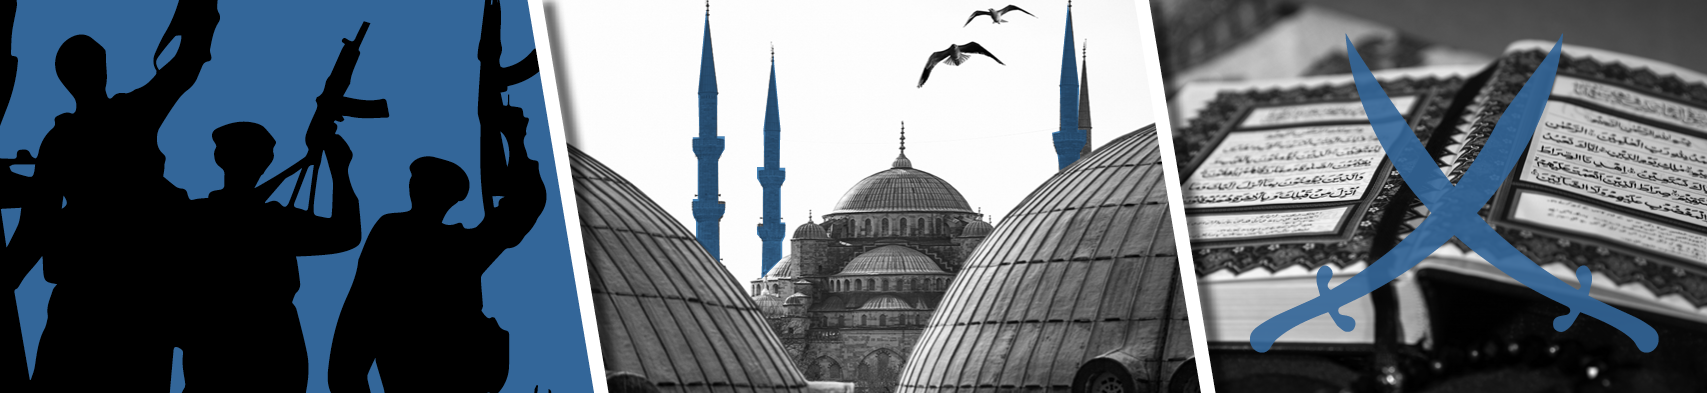 Fotocollage von Männern mit Maschinengewehren, Kuppeldächern einer Mosche und einem Koran, über dem die Grafik zwei gekreuzter Krummschwerter liegt.